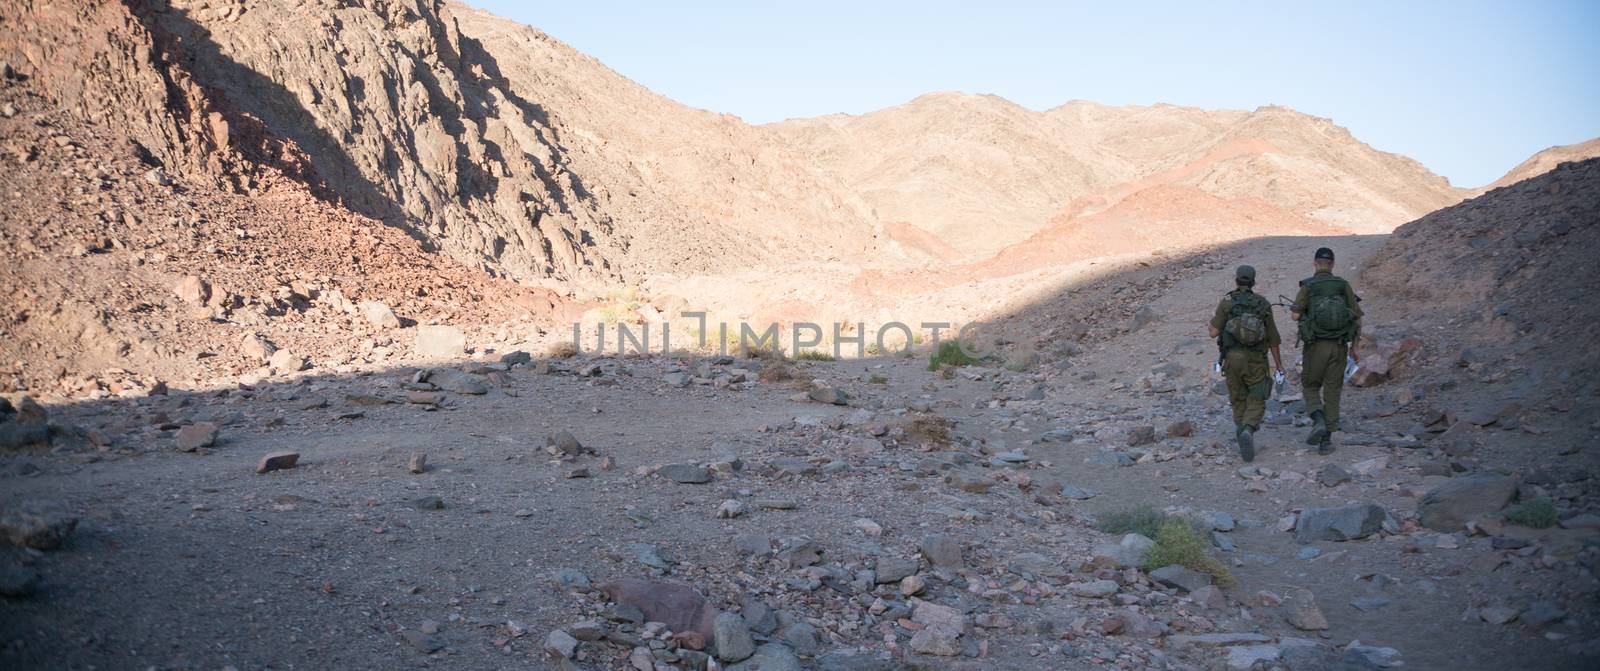 Soldiers patrol in desert by javax